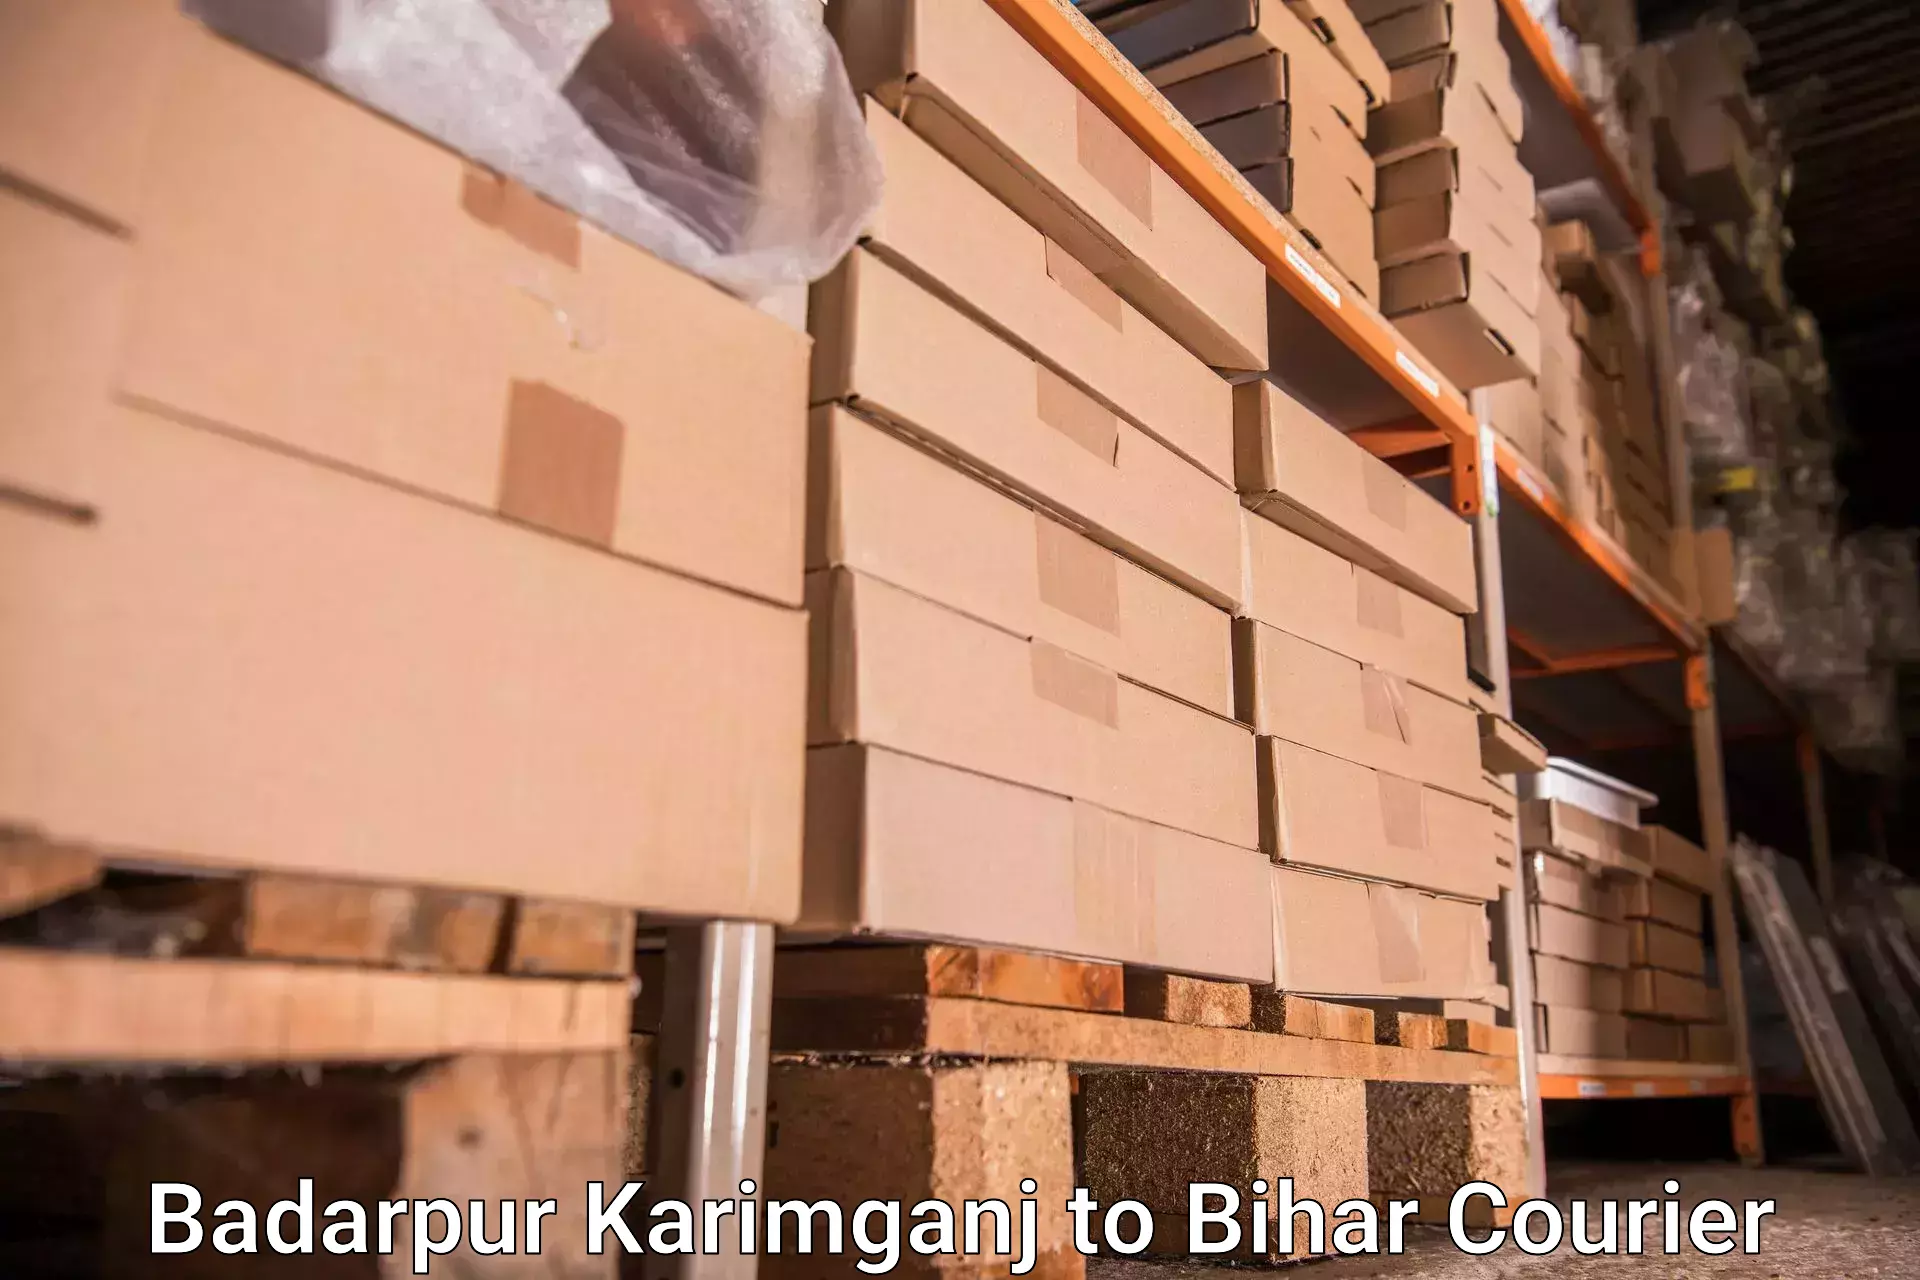 Baggage delivery estimate Badarpur Karimganj to Jalalgarh